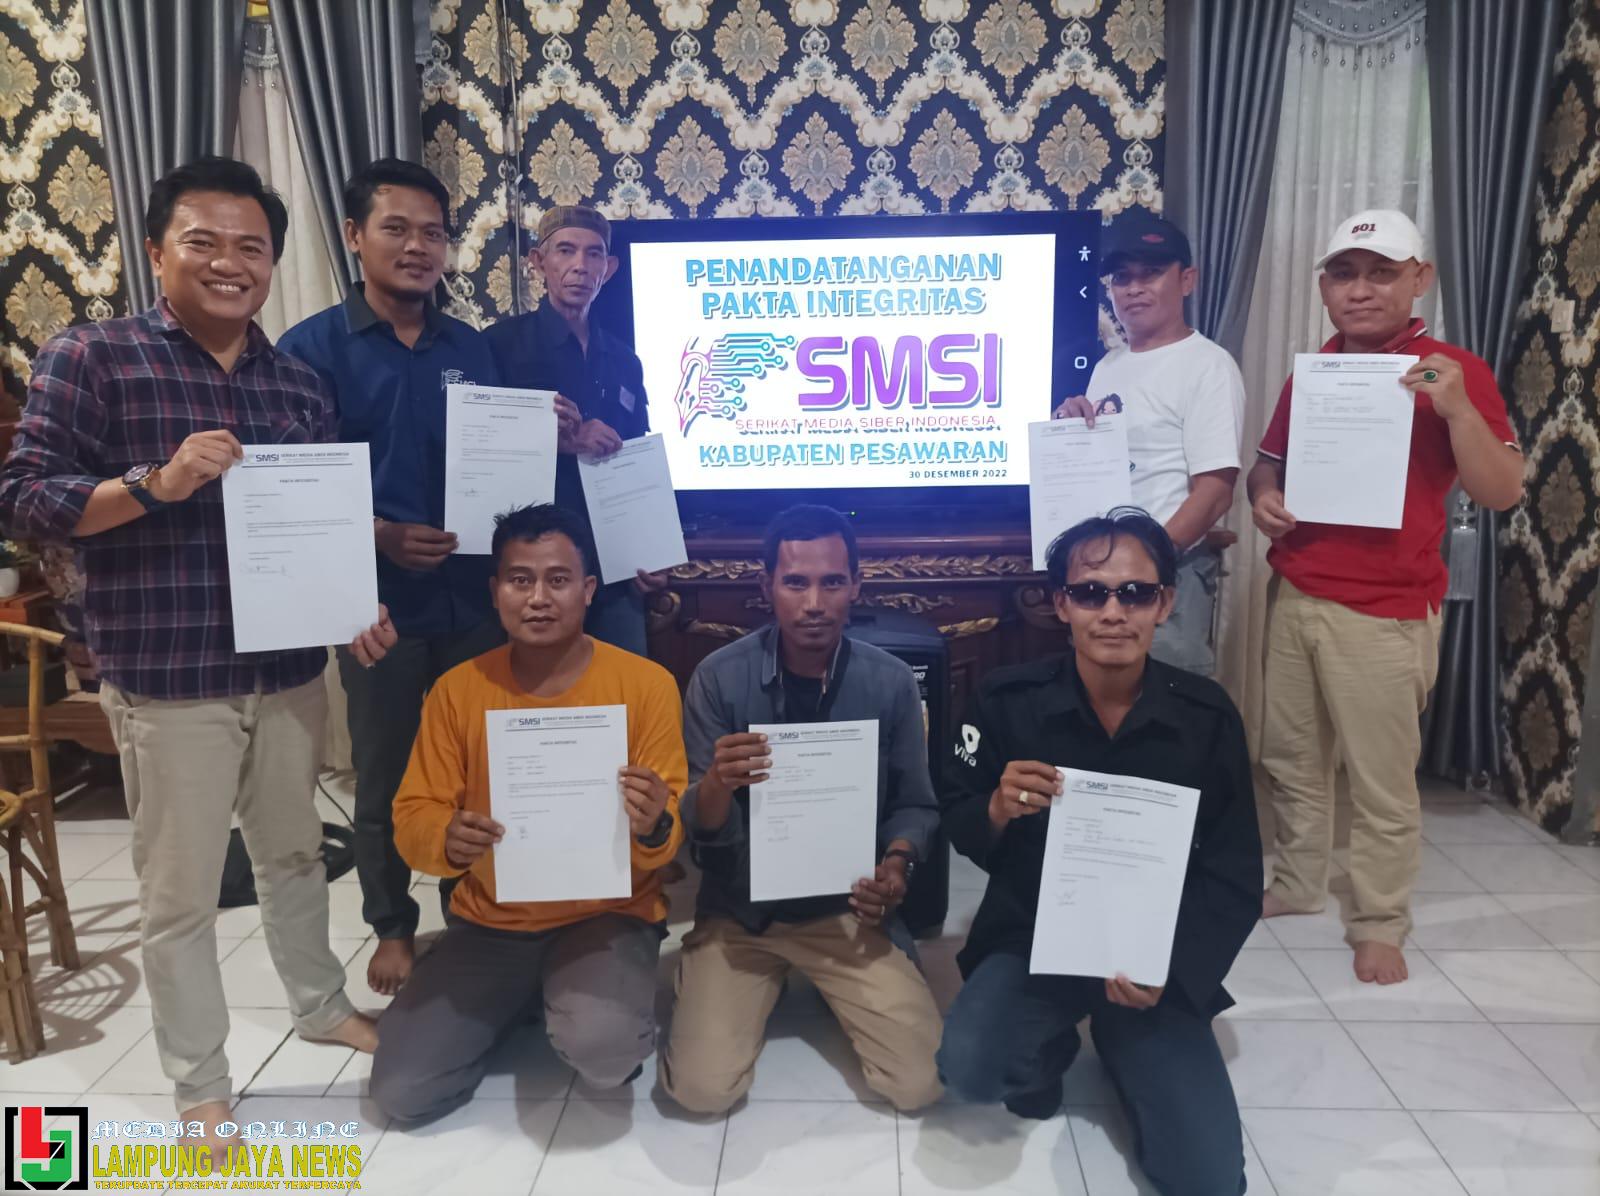 Penantanganan Fakta Integritas, Warnai Rapat Kerja SMSI Akhir Tahun 2022 Kabupaten Pesawaran